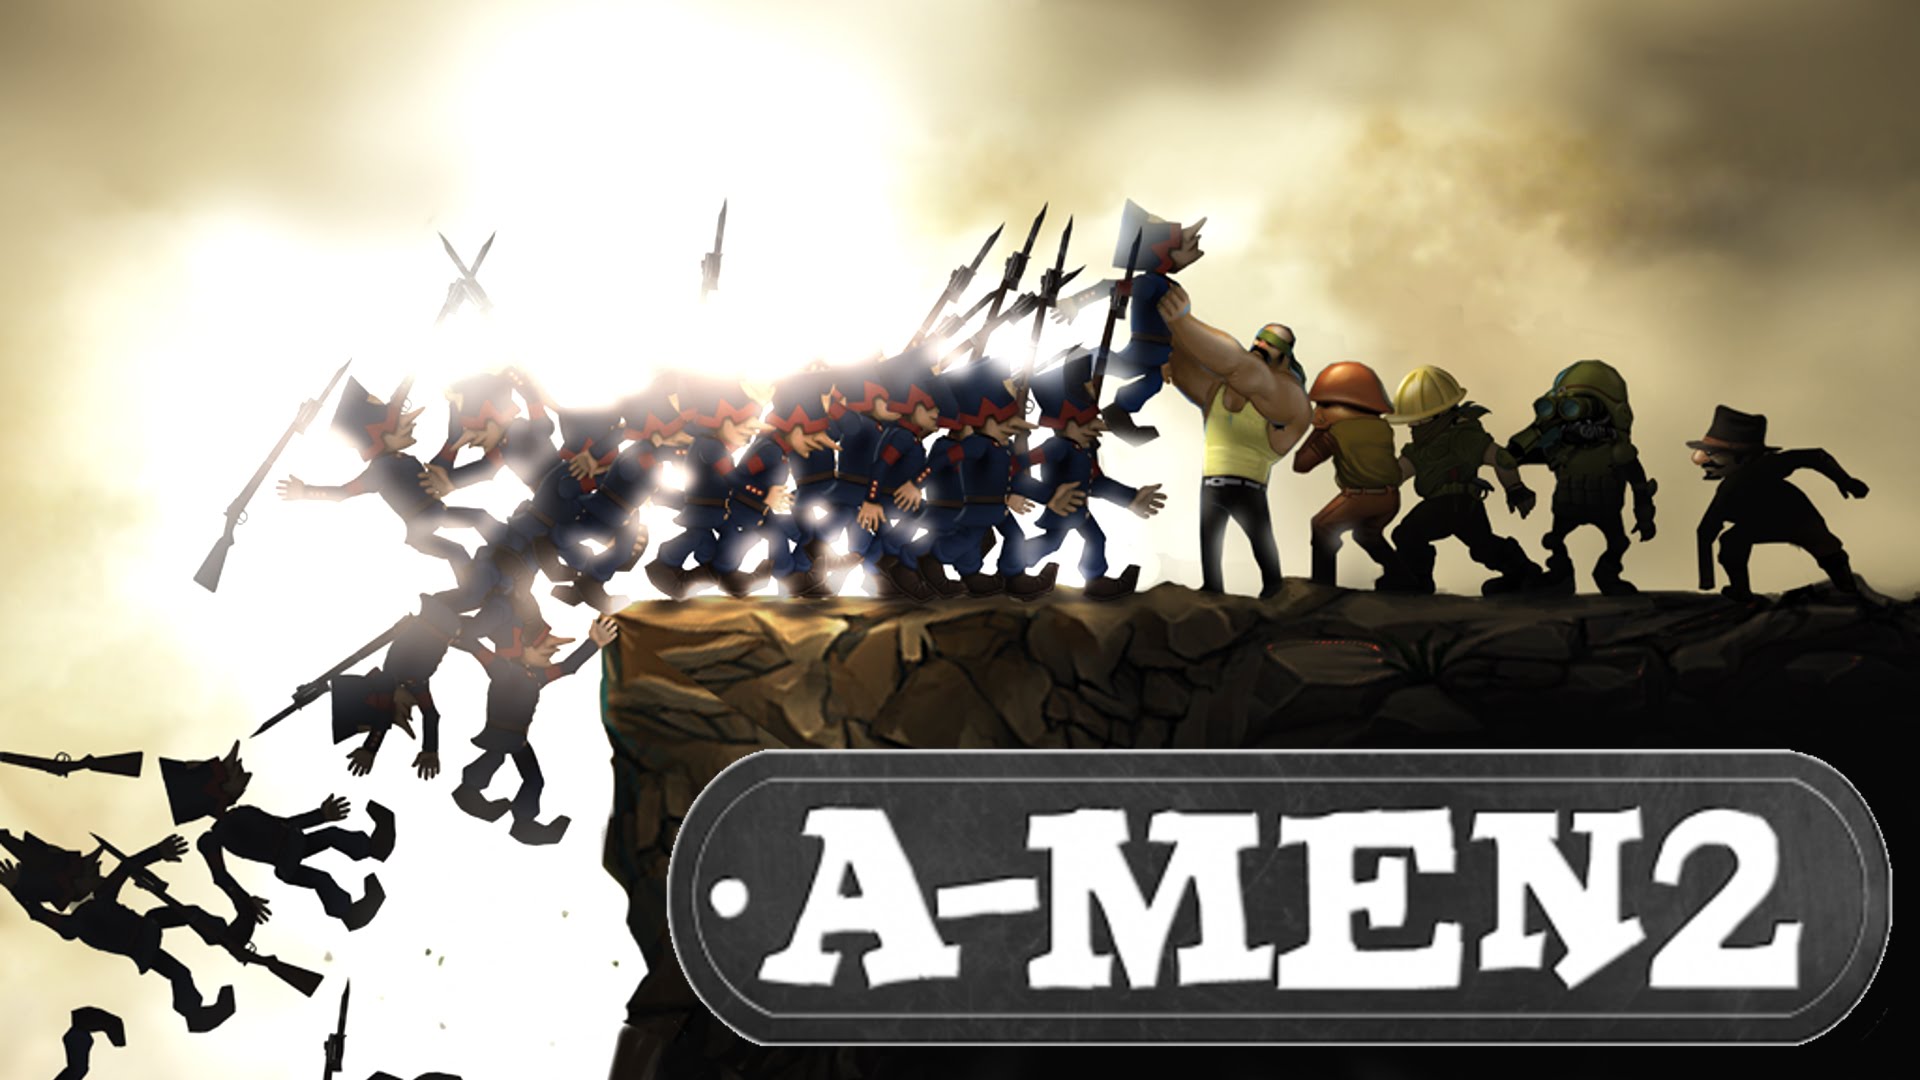 A-Men 2 Backgrounds, Compatible - PC, Mobile, Gadgets| 1920x1080 px